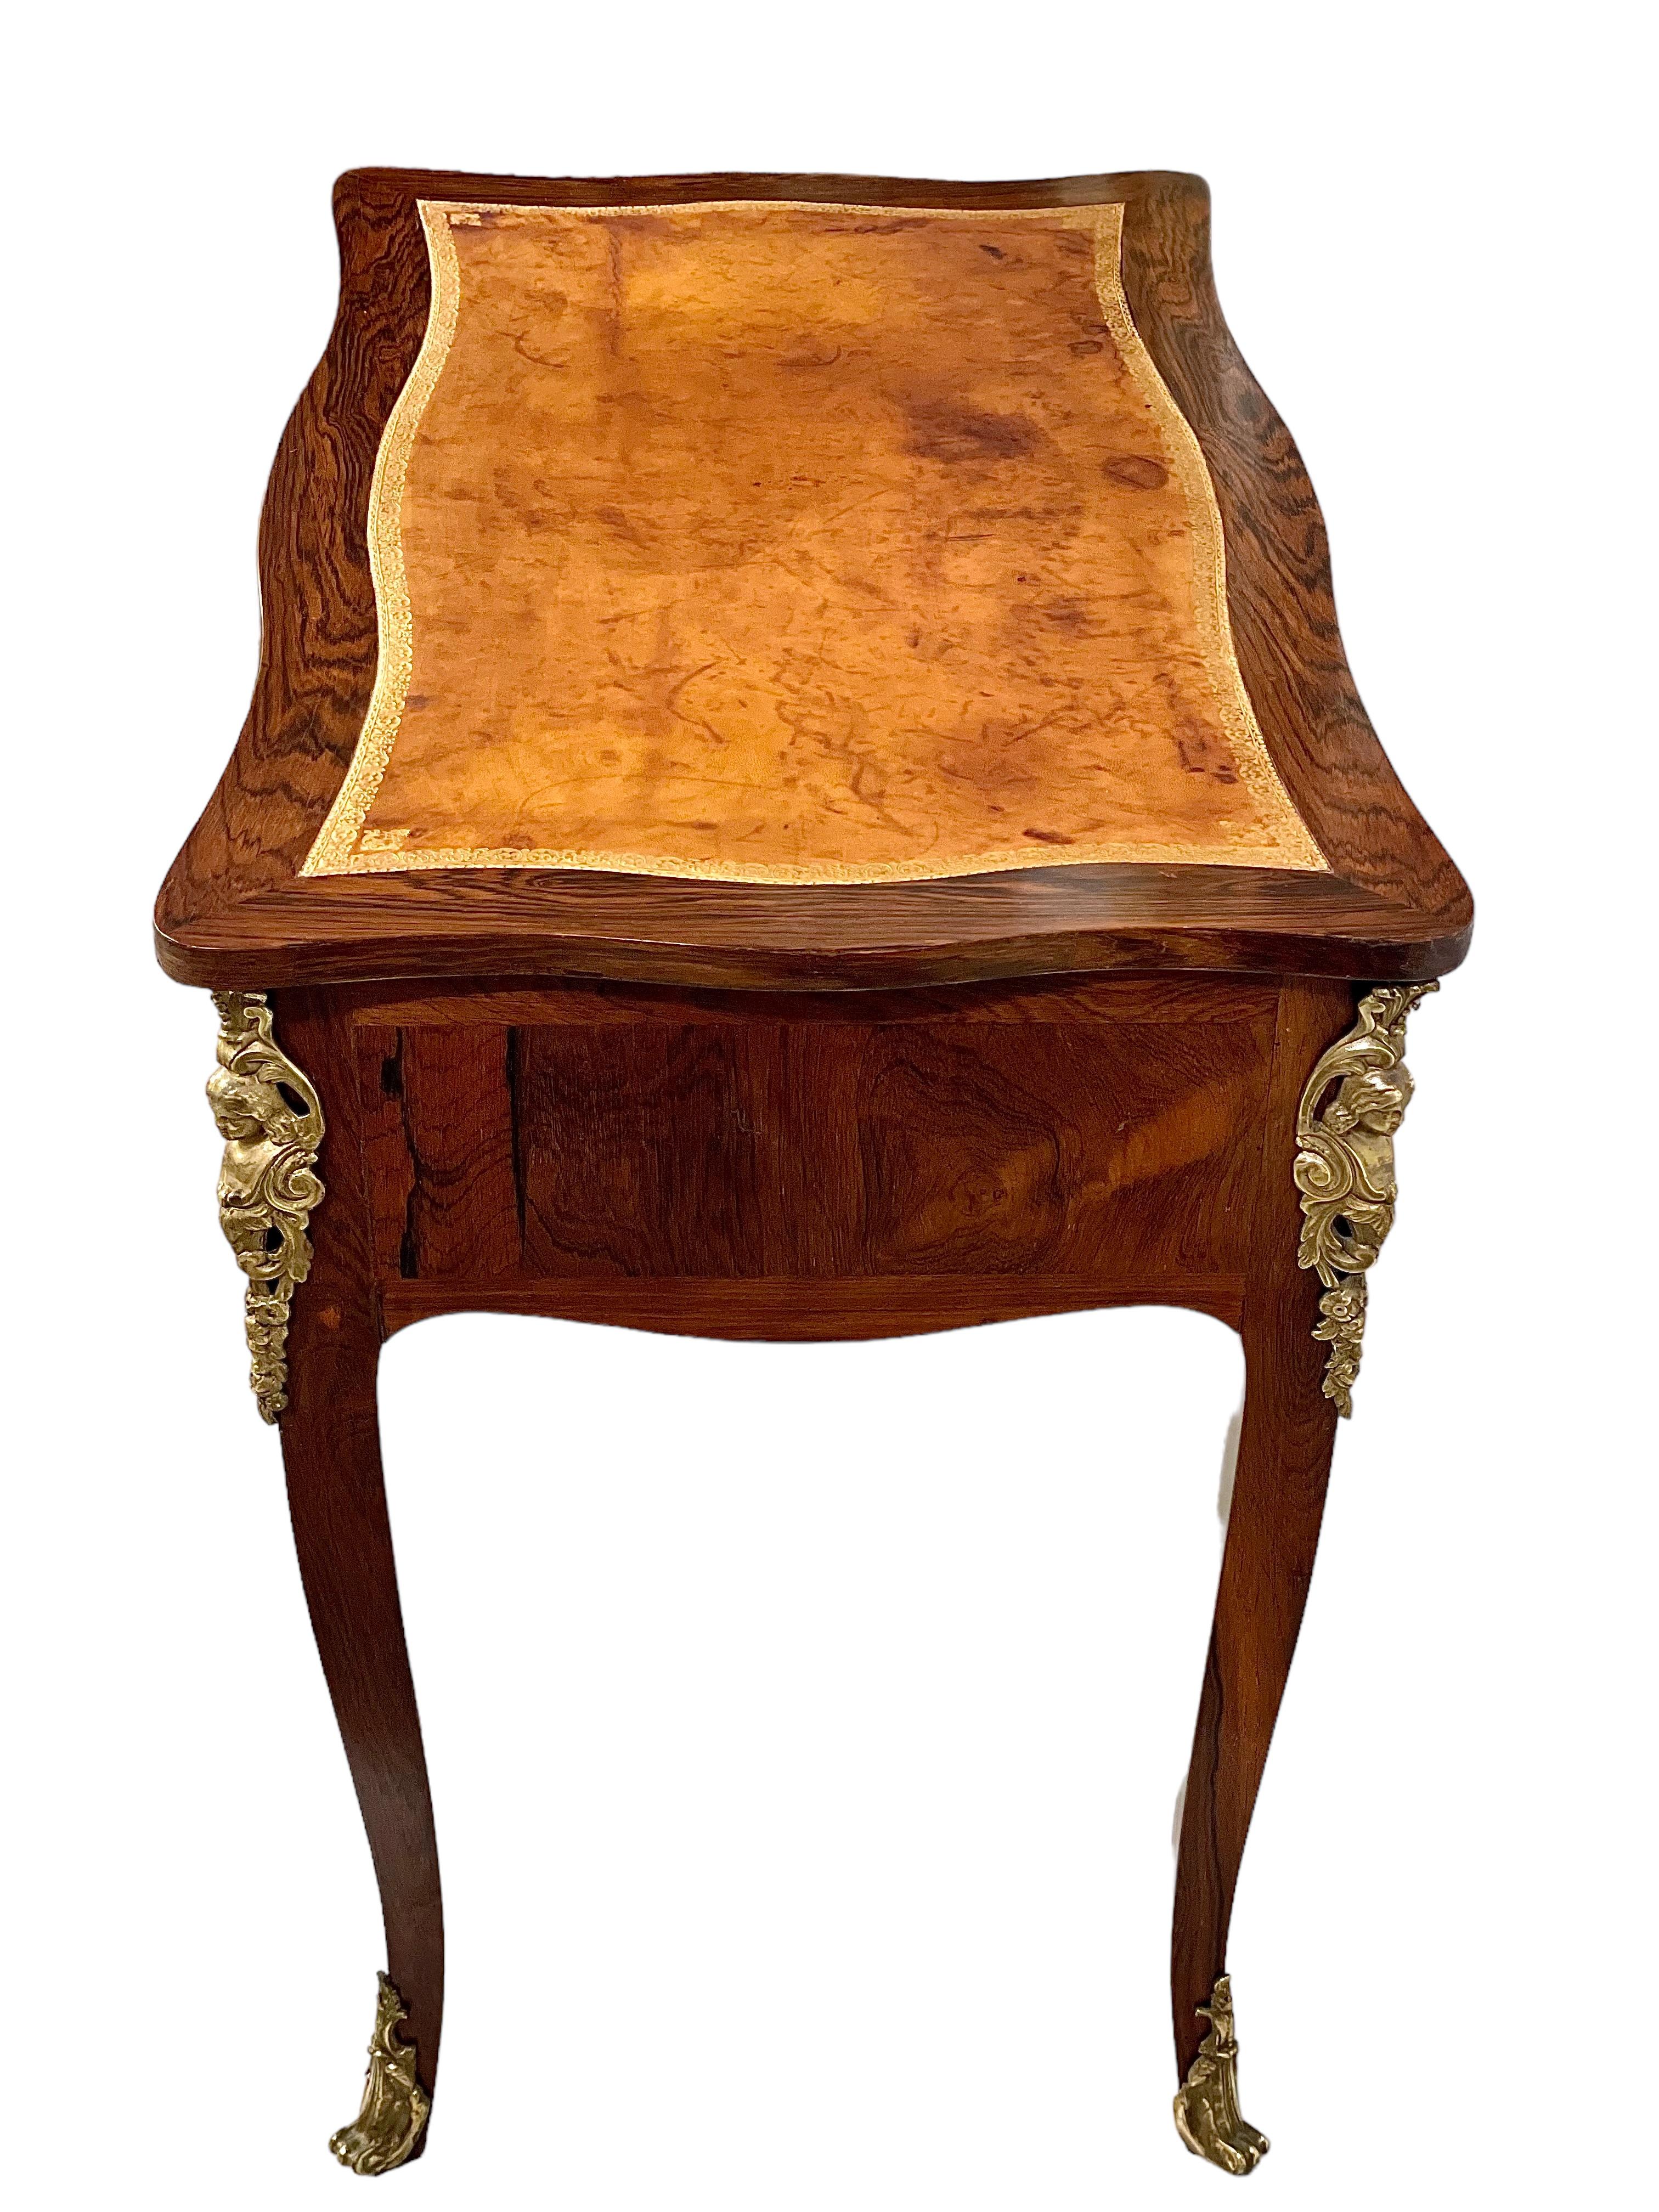 Datant de la période Louis XV, cette exquise petite table à écrire porte le poinçon de Delorme (Adrien Delorme, reçu Maître le 22/06/1748). Faisant office de table à écrire ou de bureau de dame, il présente une marqueterie et dévoile une triade de